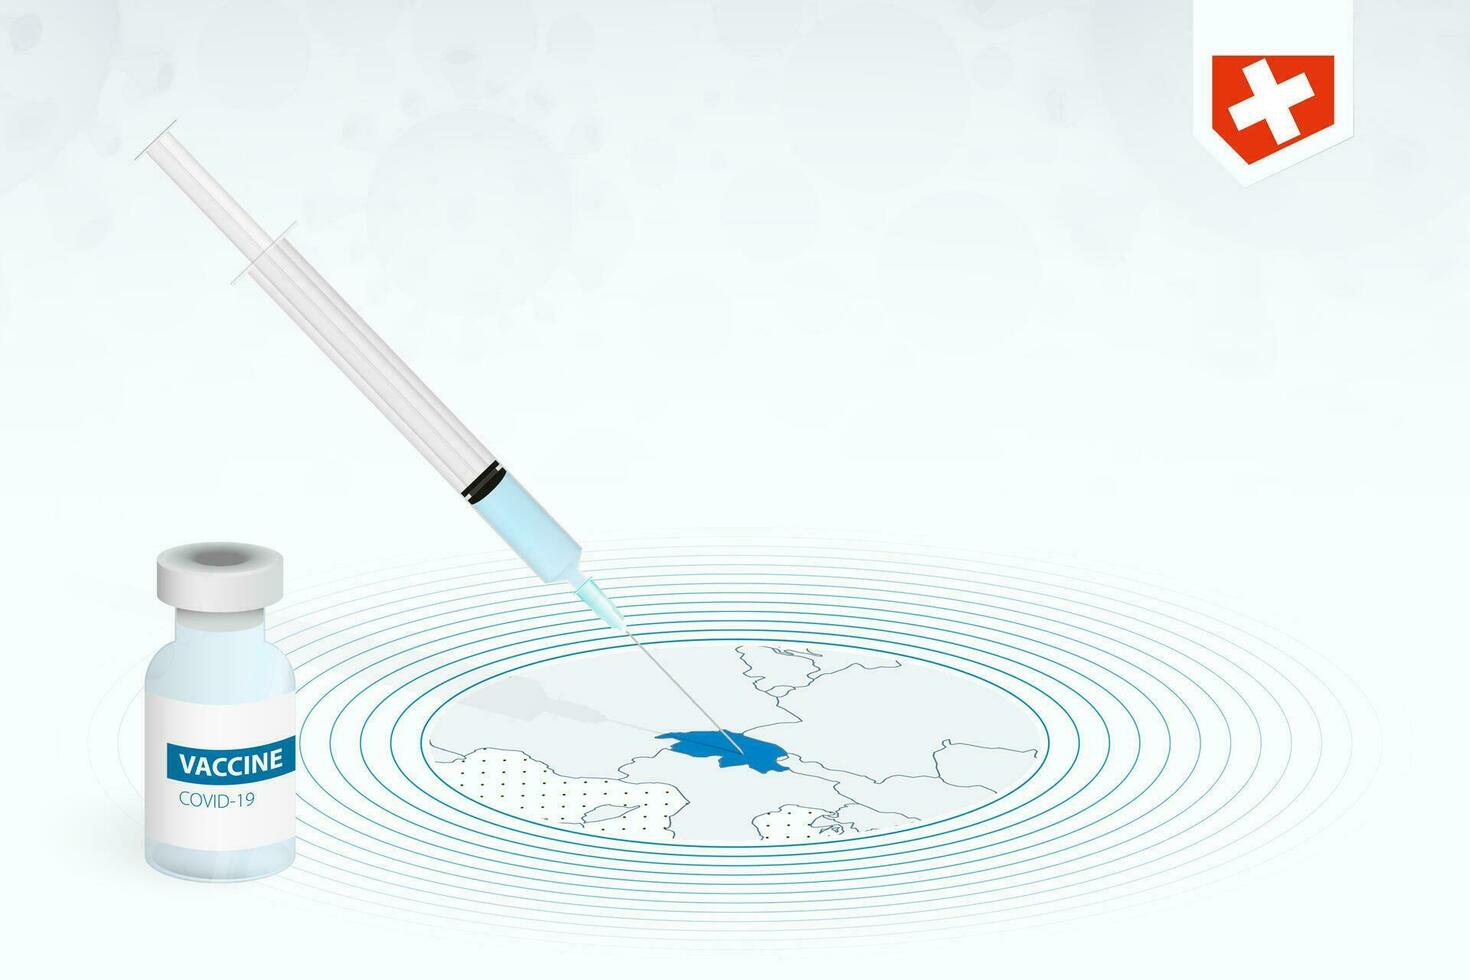 covid-19 vaccination dans Suisse, coronavirus vaccination illustration avec vaccin bouteille et seringue injection dans carte de Suisse. vecteur